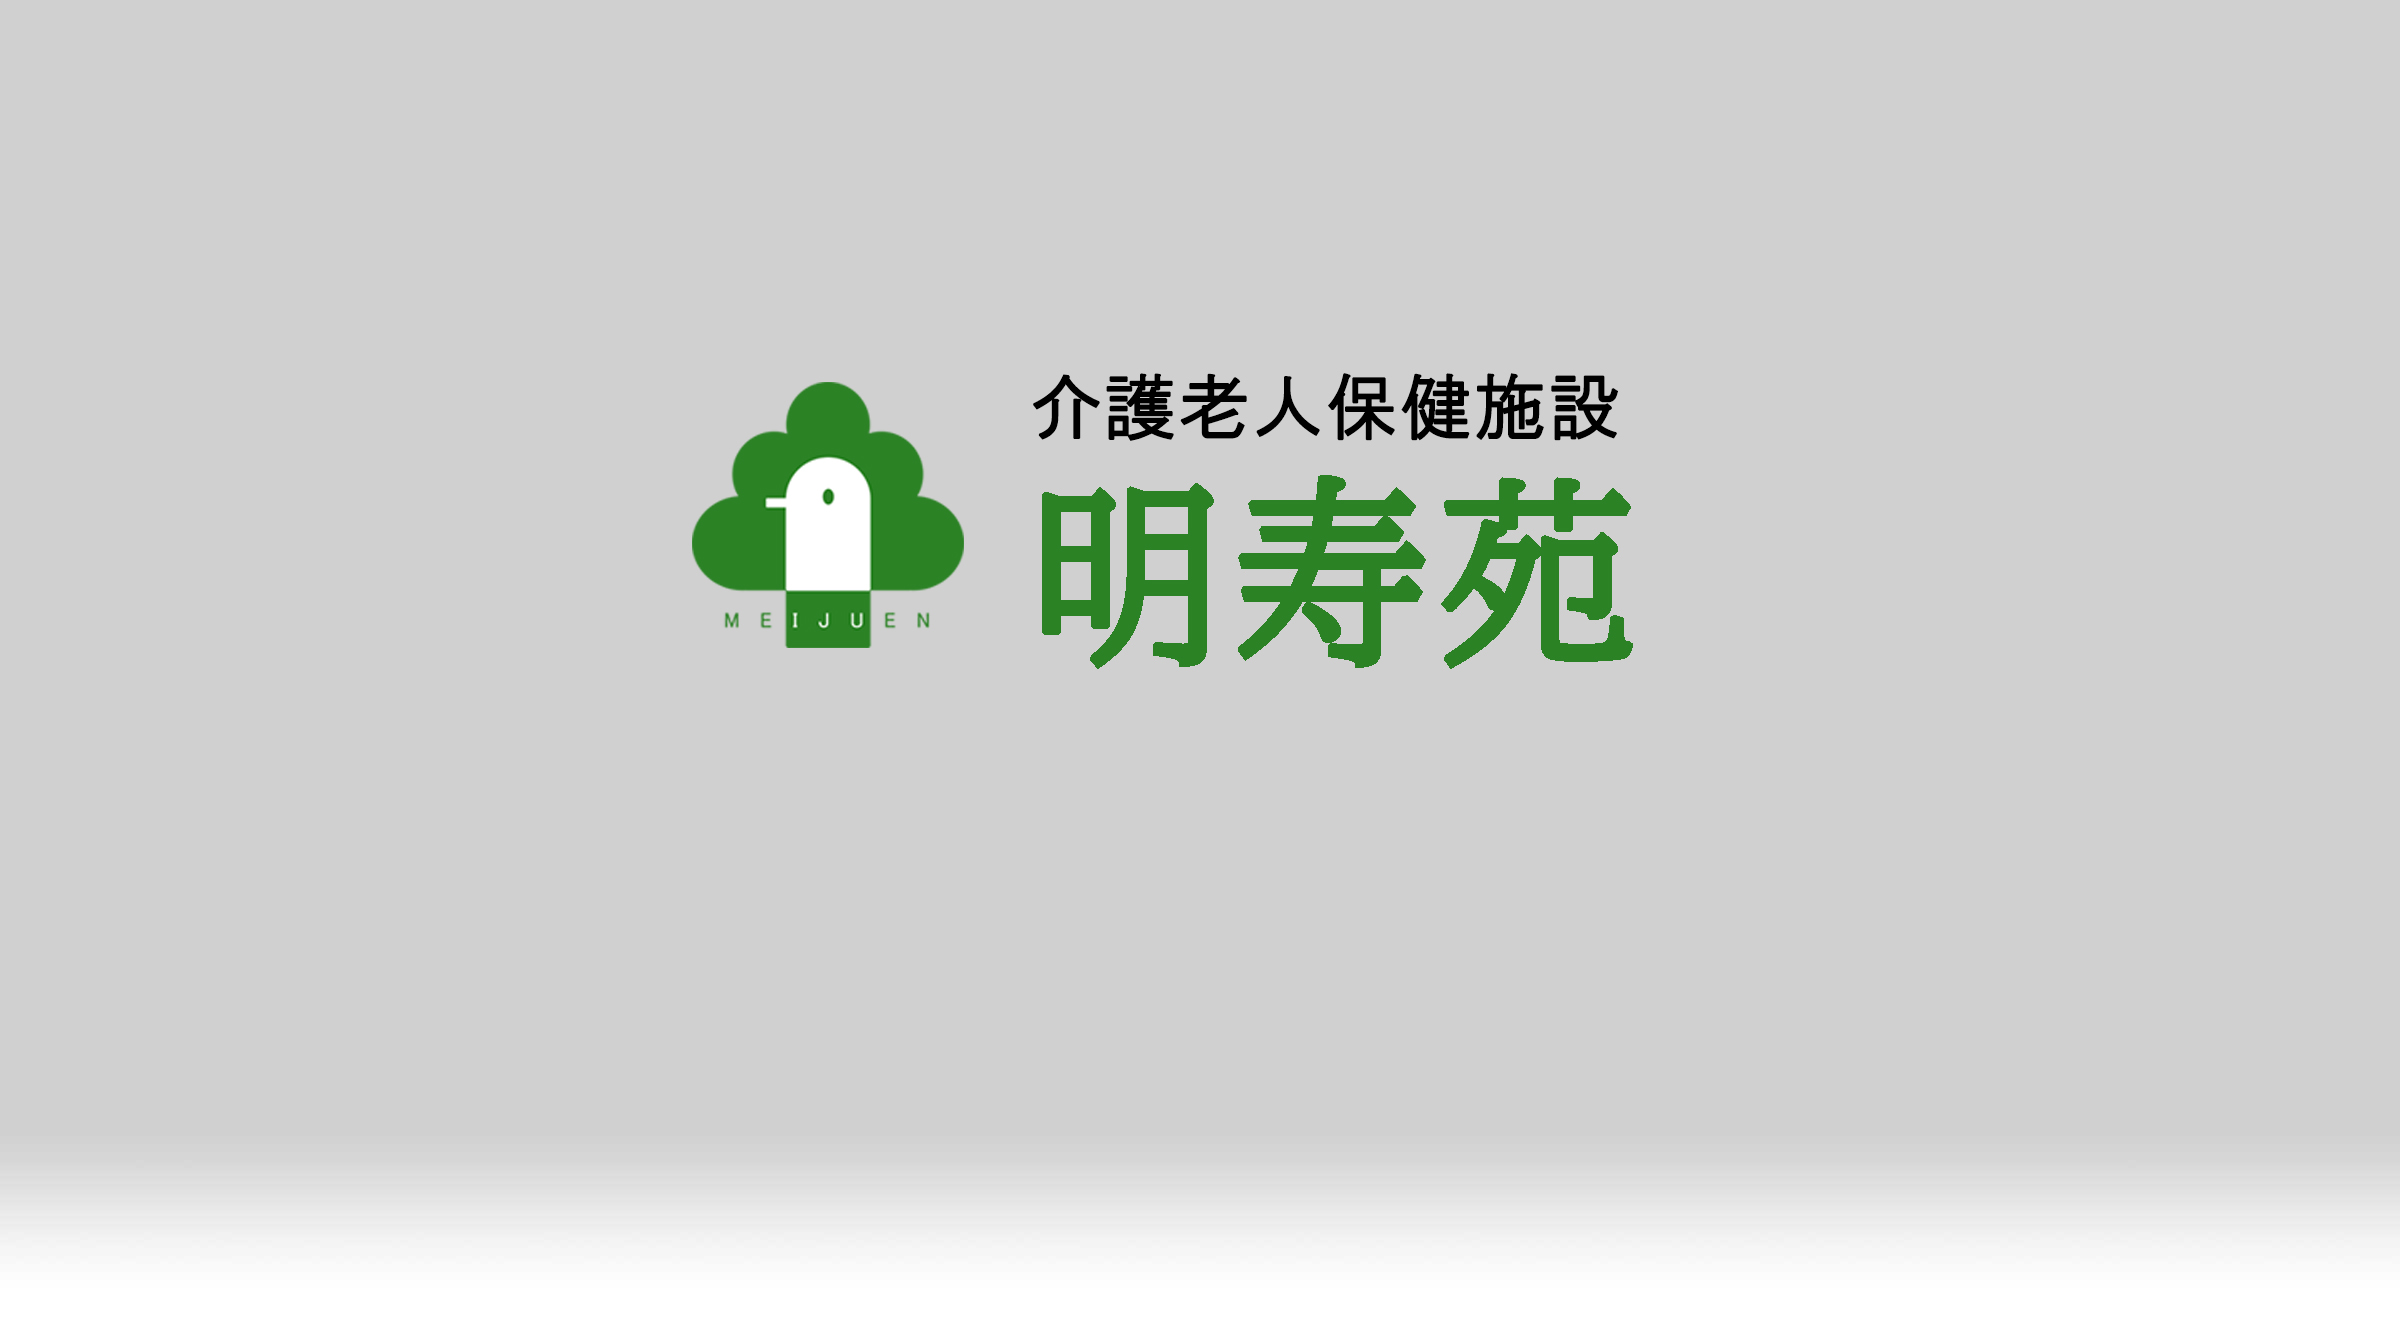 明寿苑のロゴイメージ画像